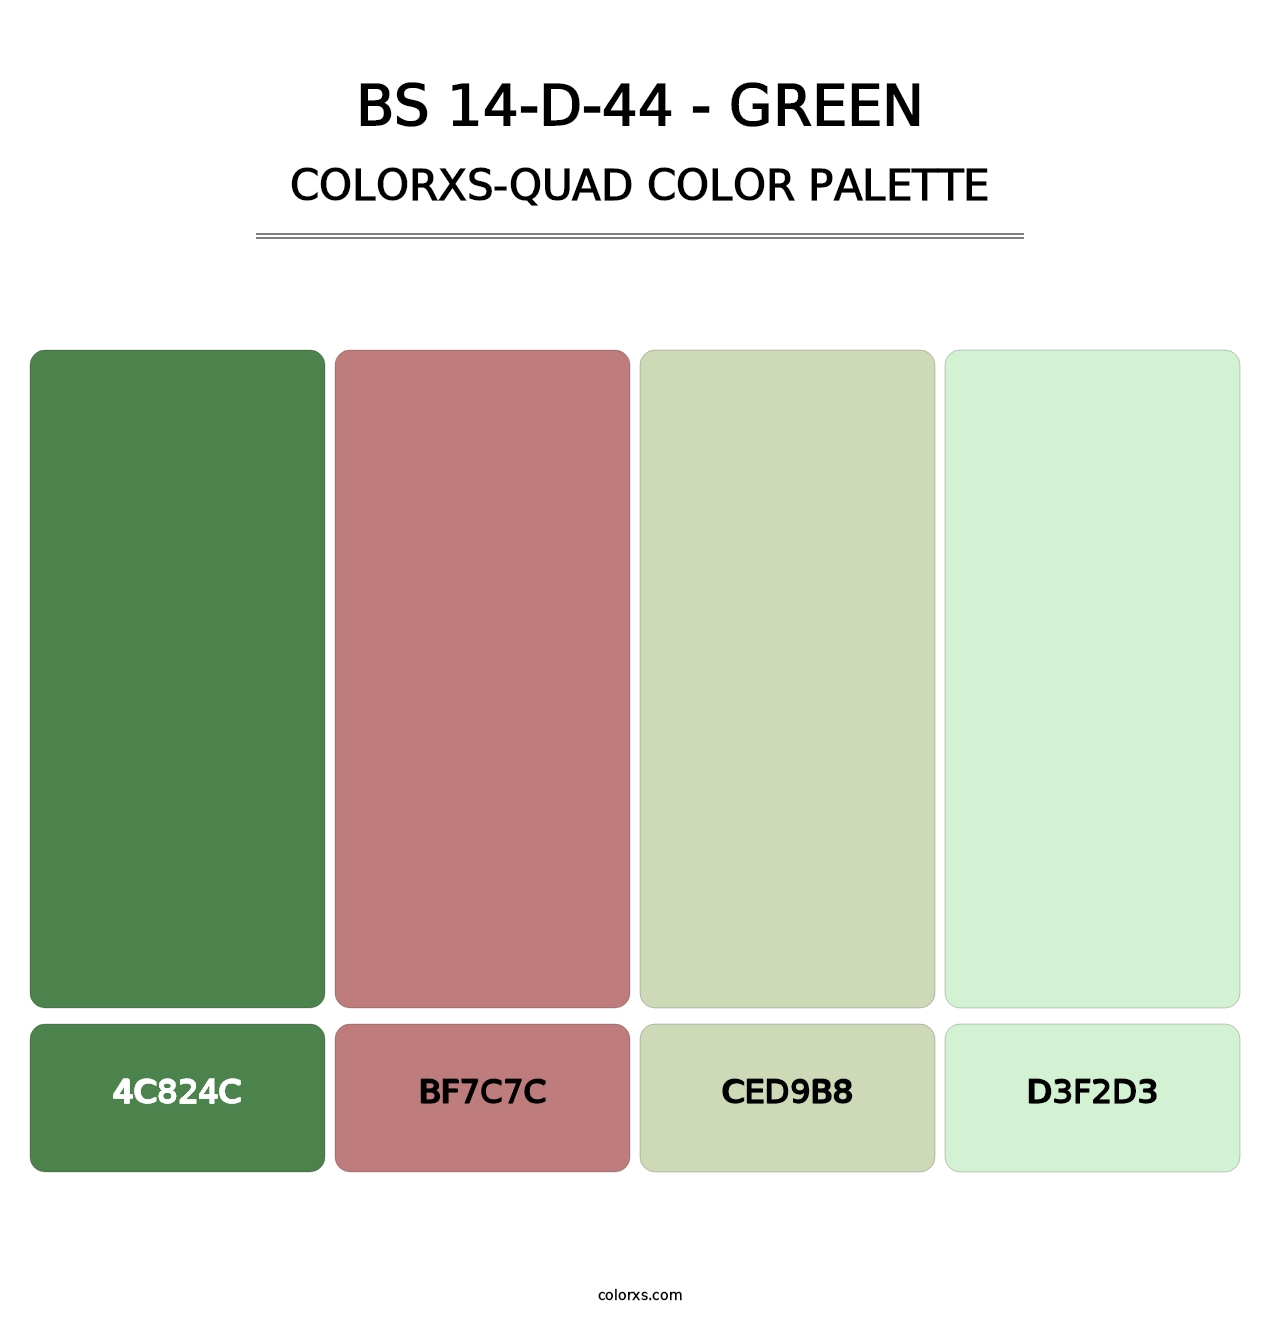 BS 14-D-44 - Green - Colorxs Quad Palette